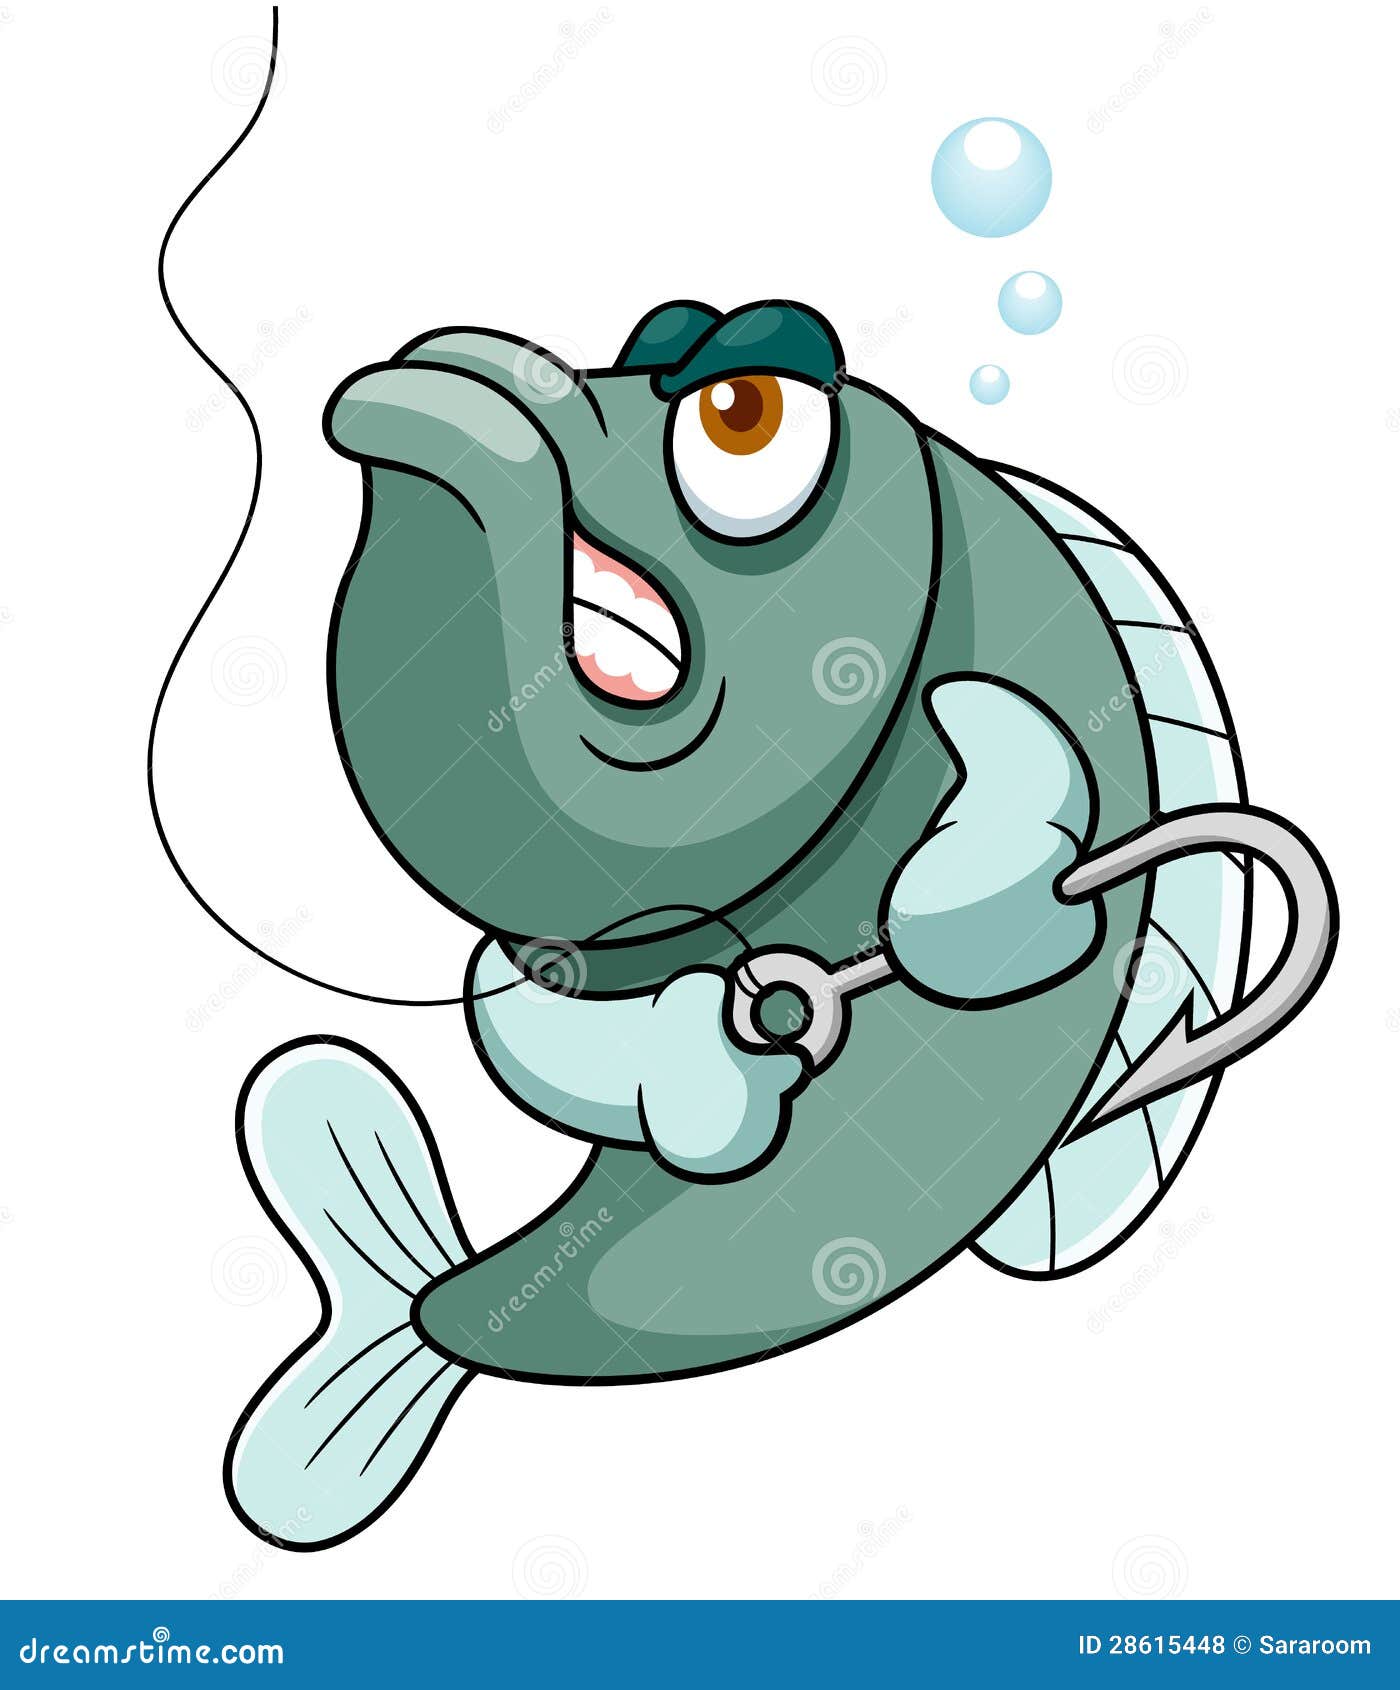 Fishing Cartoon Stock Illustrations – 67,460 Fishing Cartoon Stock  Illustrations, Vectors & Clipart - Dreamstime